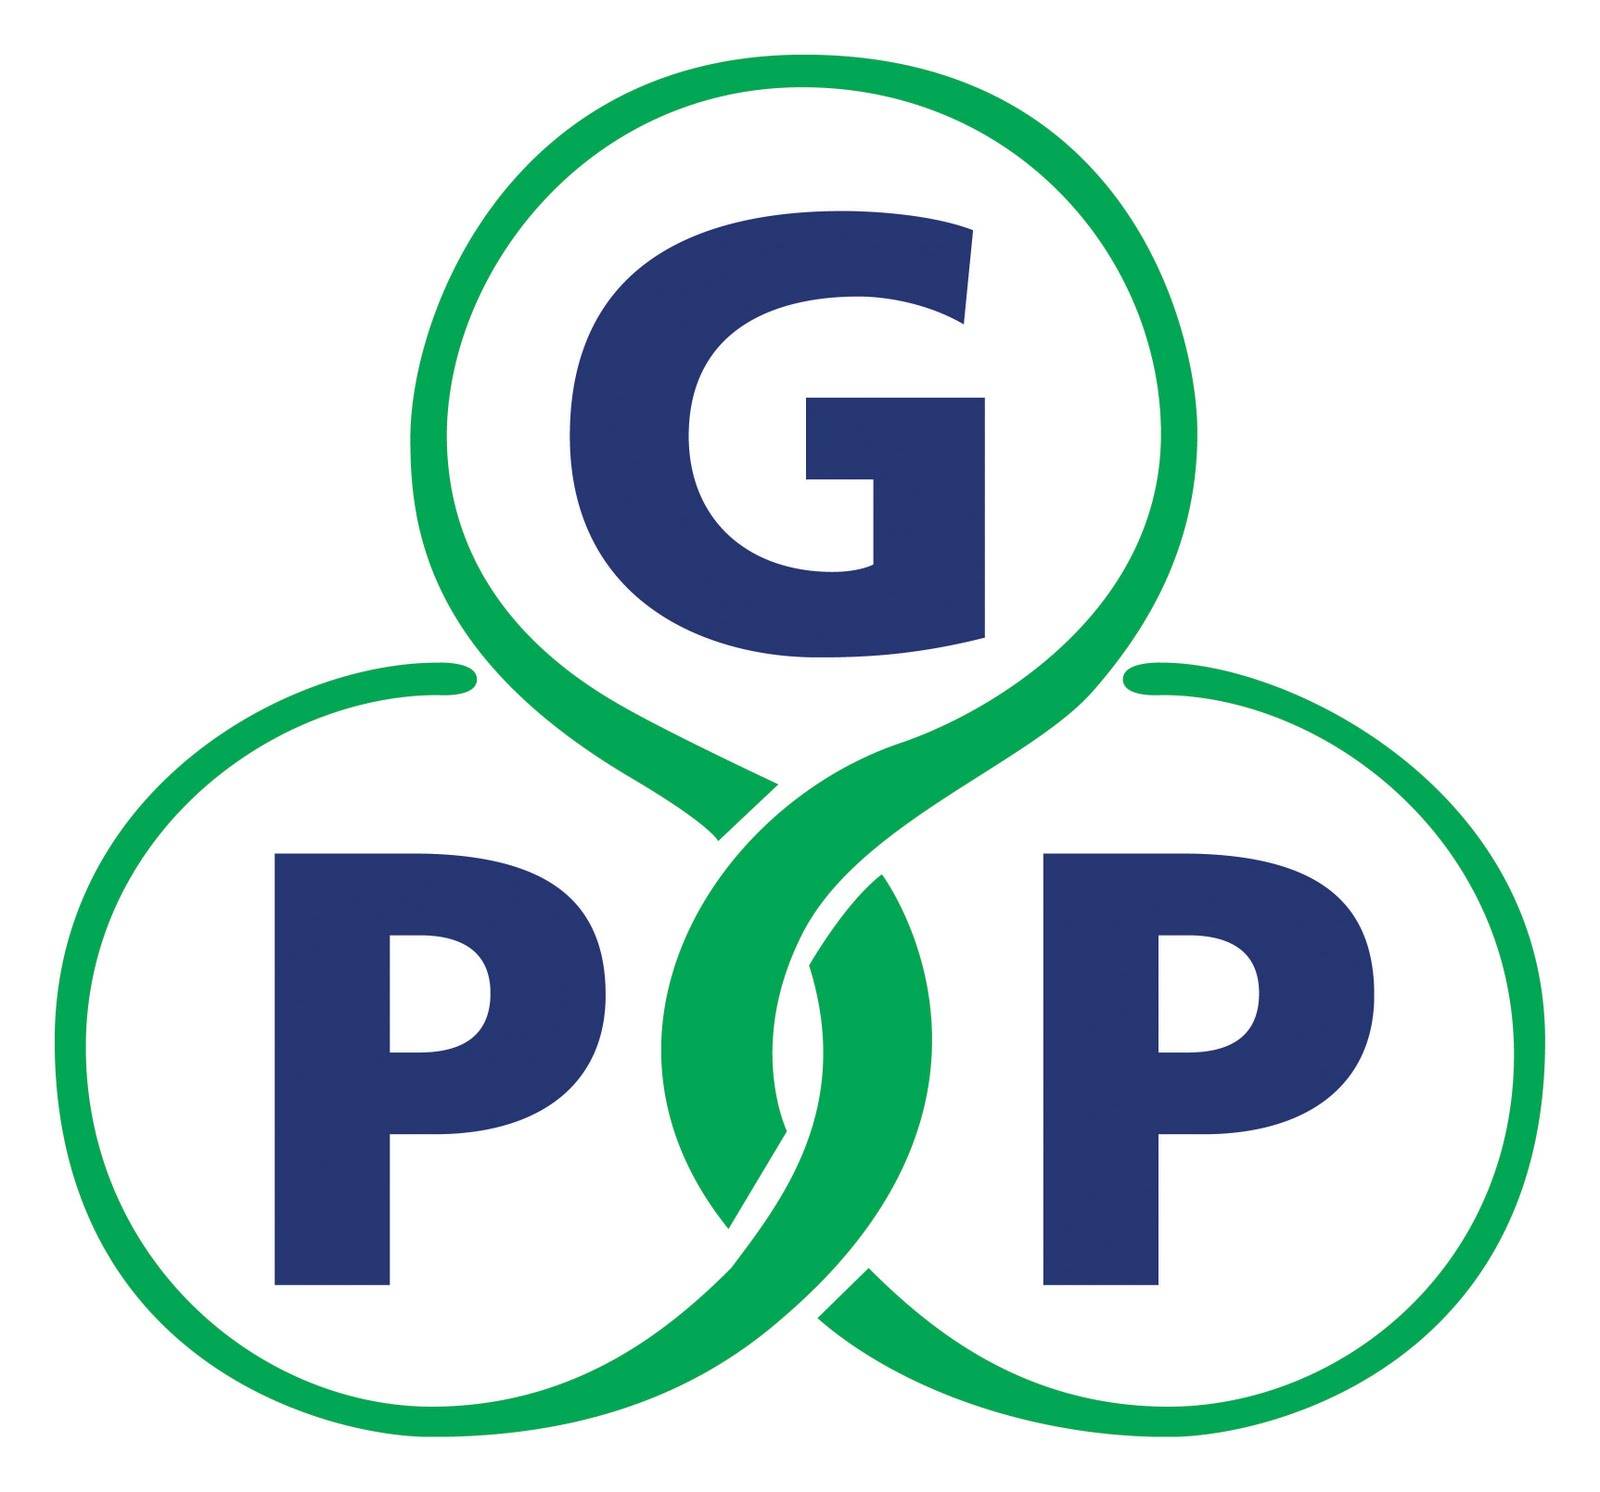 Hồ sơ thẩm định nhà thuốc đạt chuẩn GPP gồm những gì?